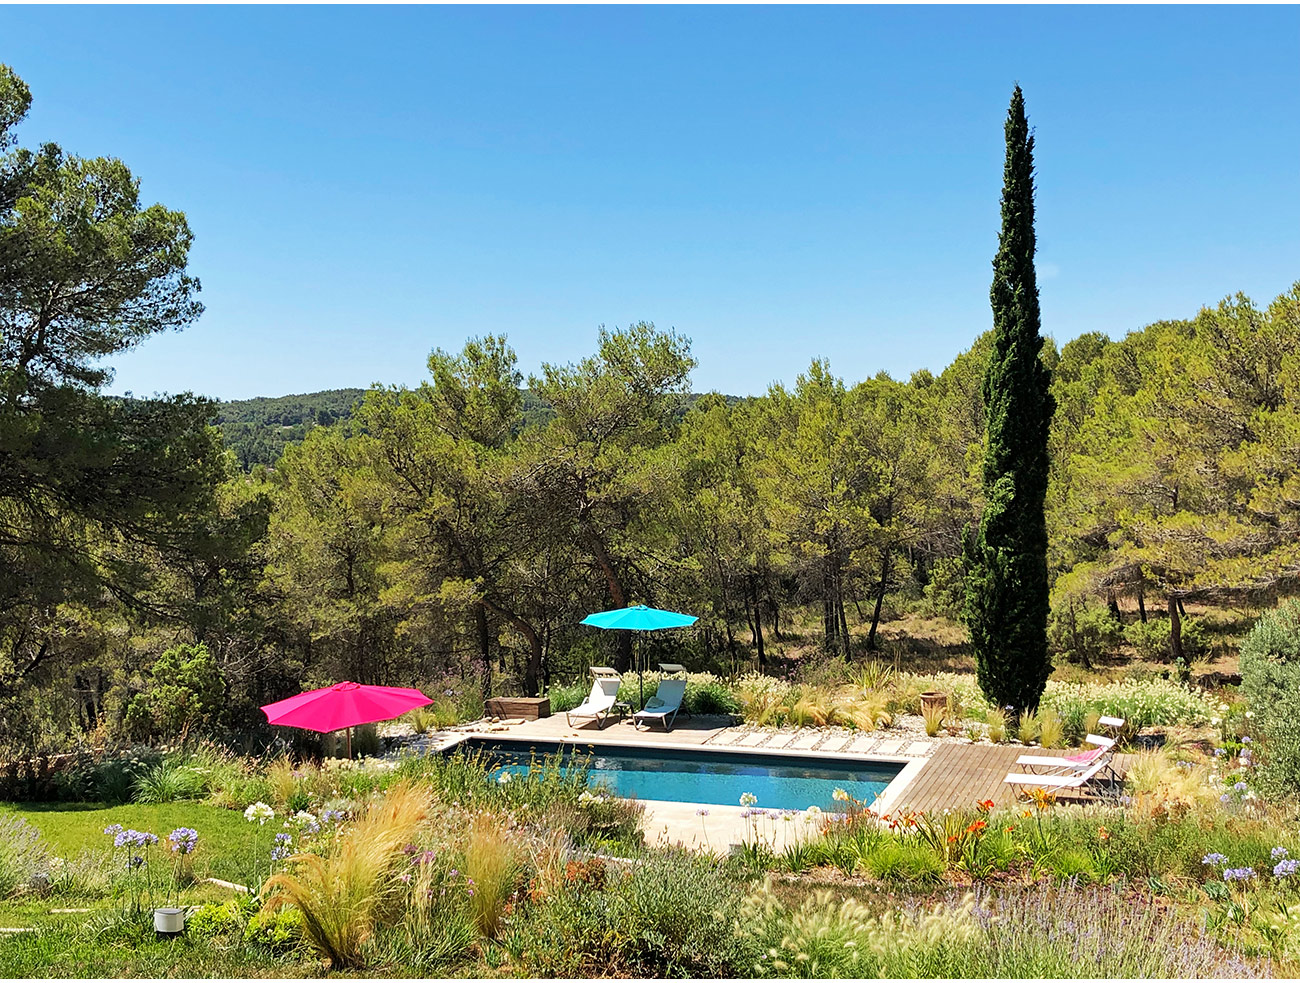 Atelier Naudier - Architecte paysagiste concepteur - Montpellier et Aix en Provence - Ambiance naturel de bords de piscine - aménagement jardin